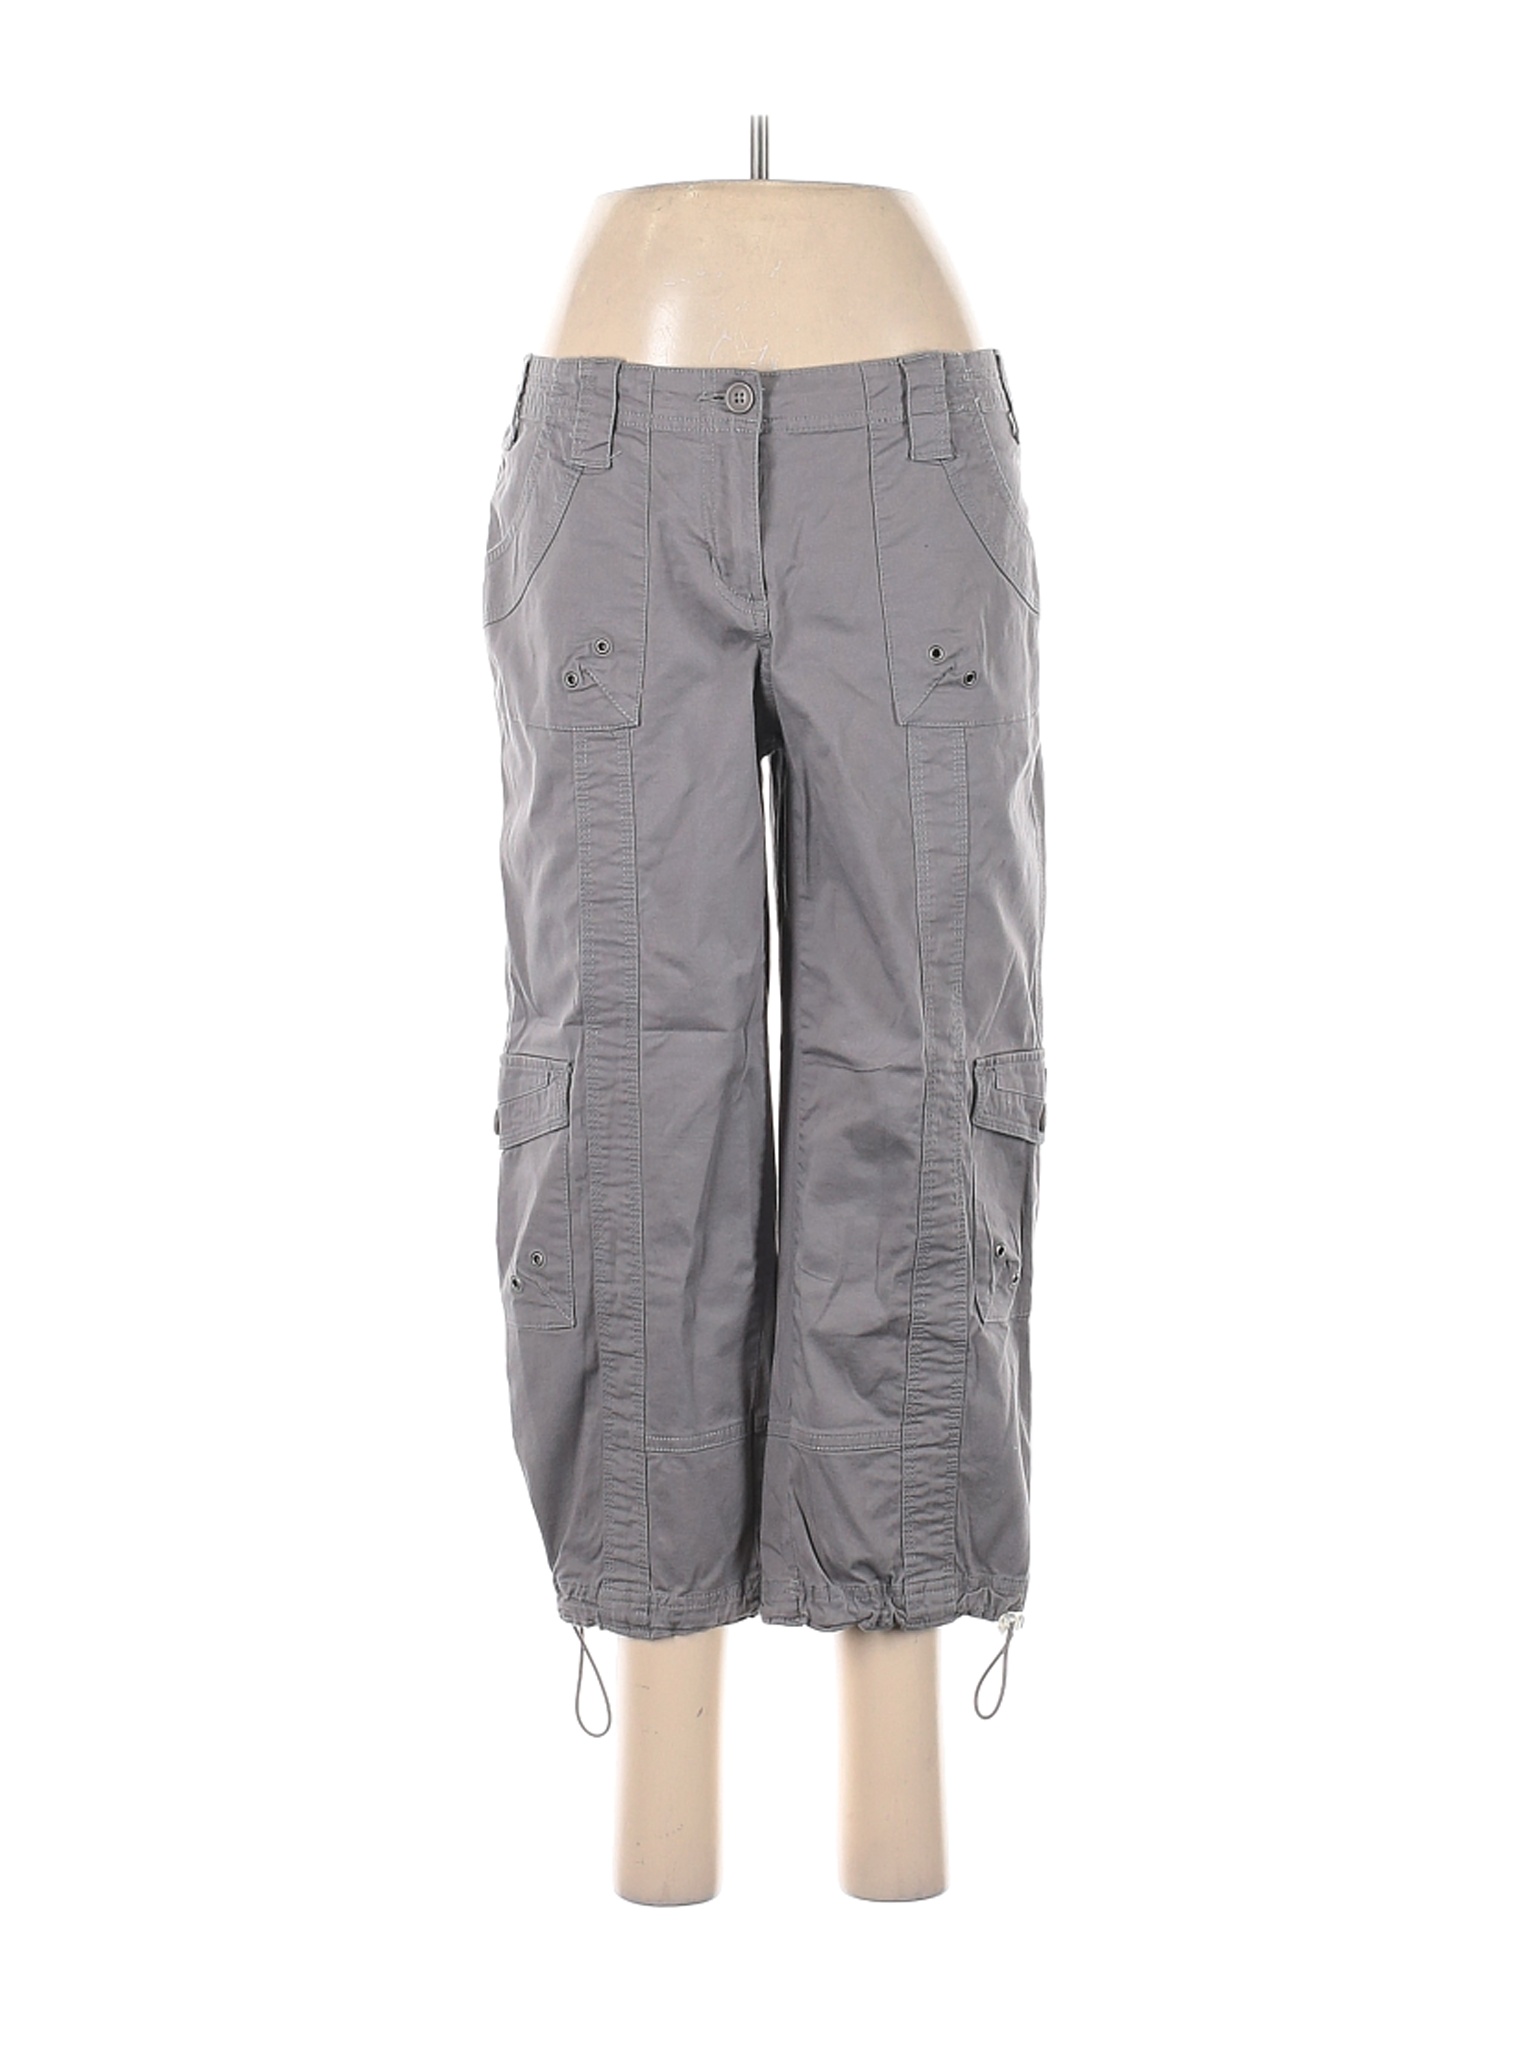 Style&Co Women Gray Cargo Pants 8 | eBay